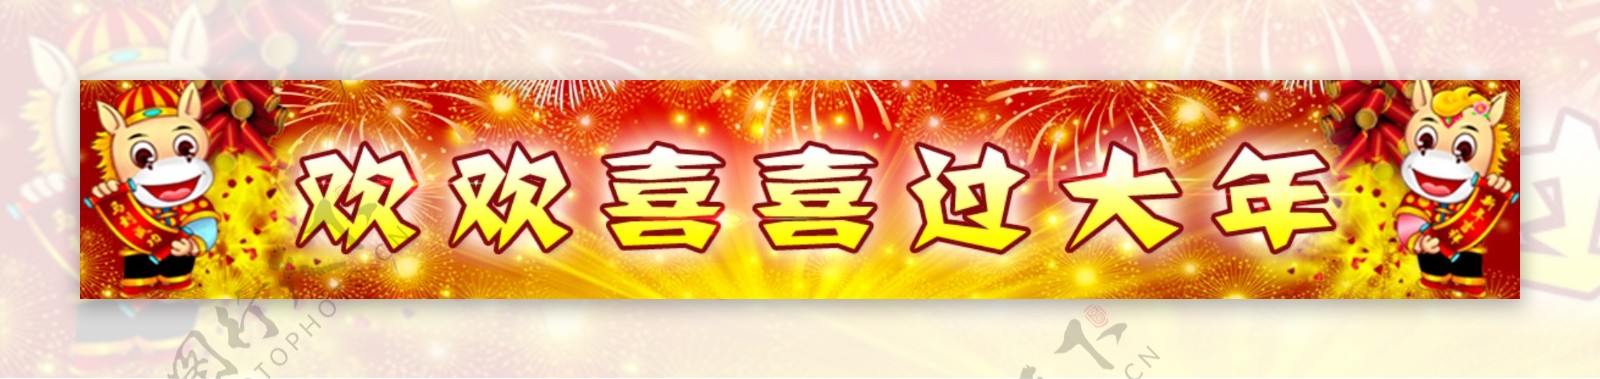 春节节节日庆祝网页广告psd素材